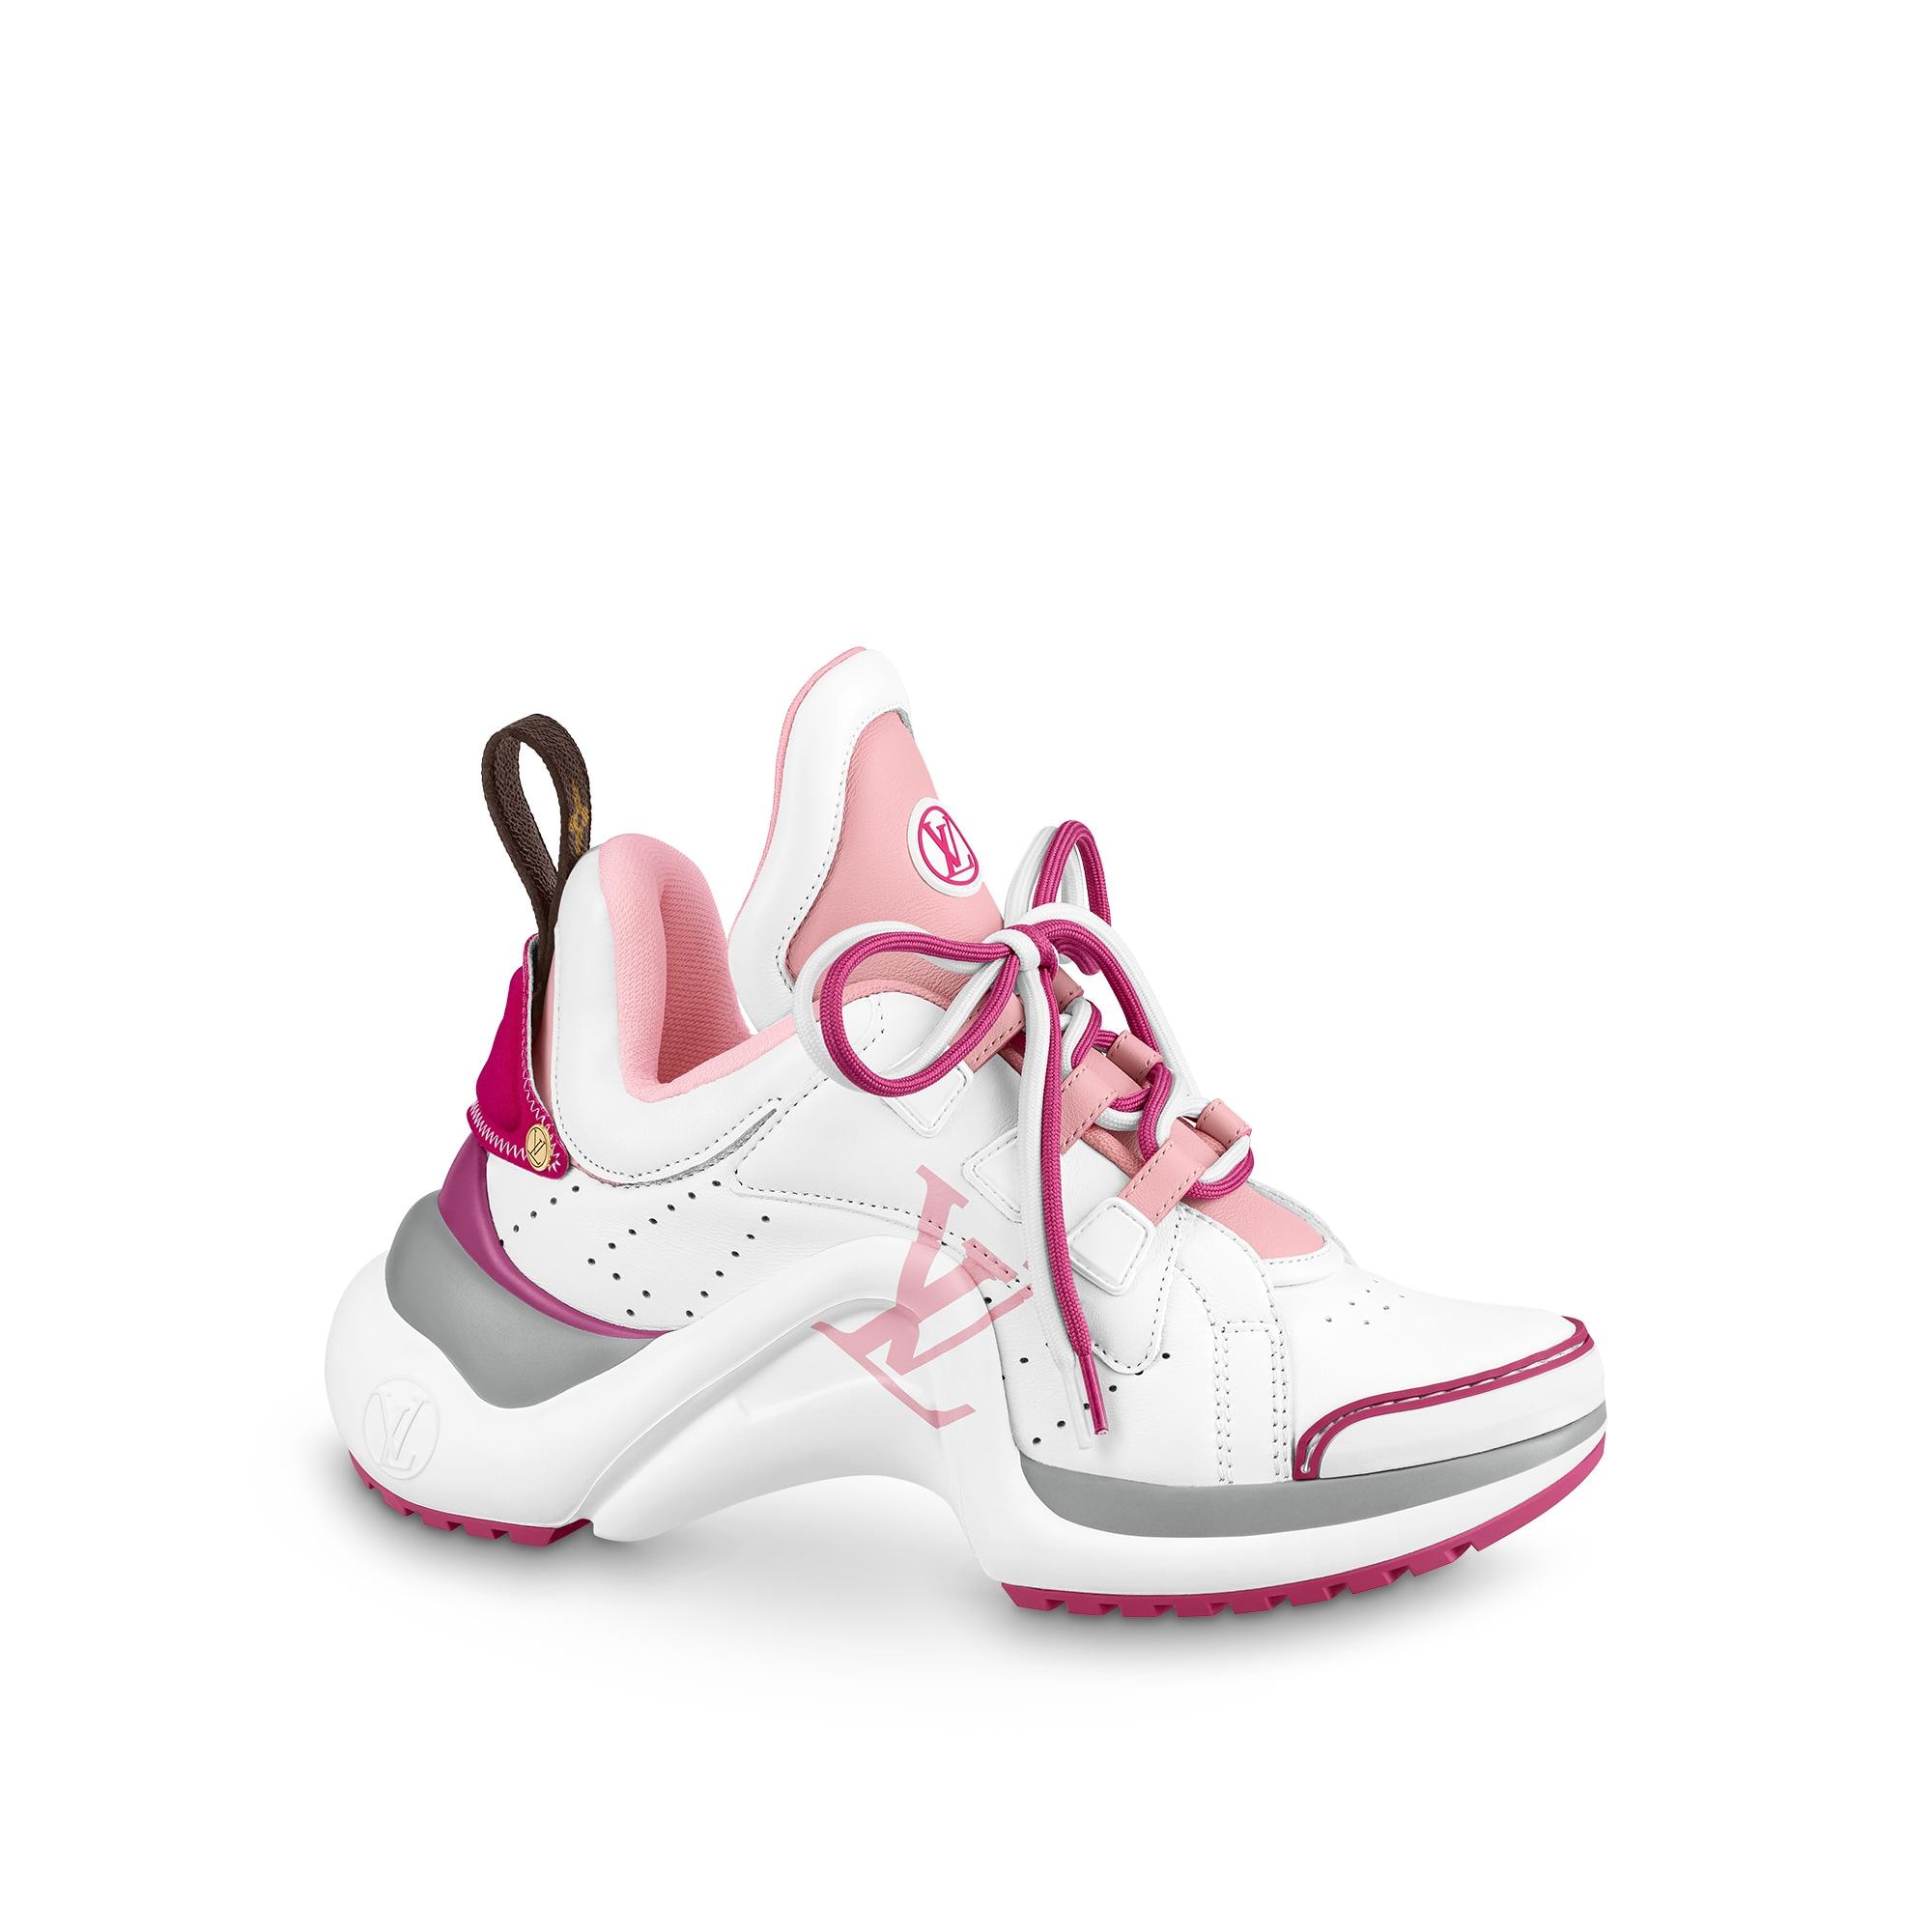 Louis Vuitton Lv Archlight Sneaker – WOMEN – Shoes 1A9SCM